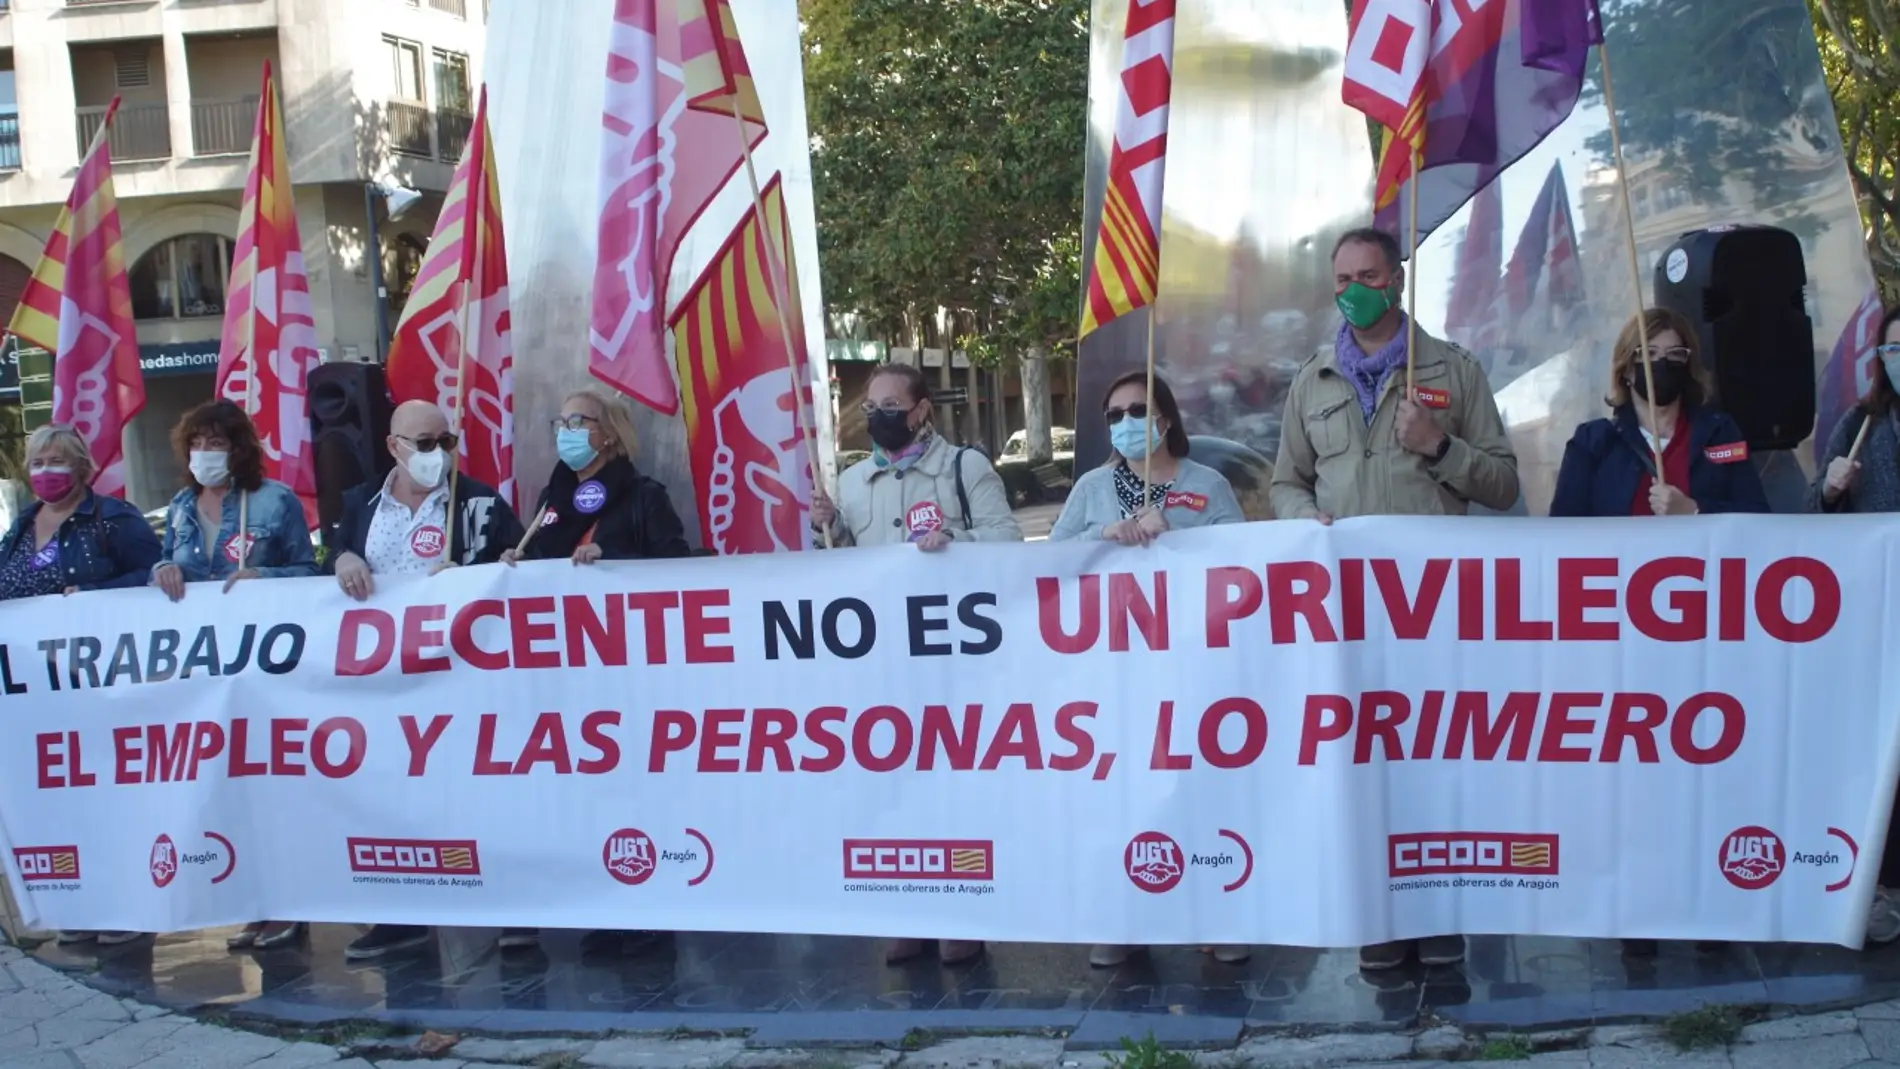 La concentración ha tenido lugar frente al Monumento a la Constitución de Zaragoza